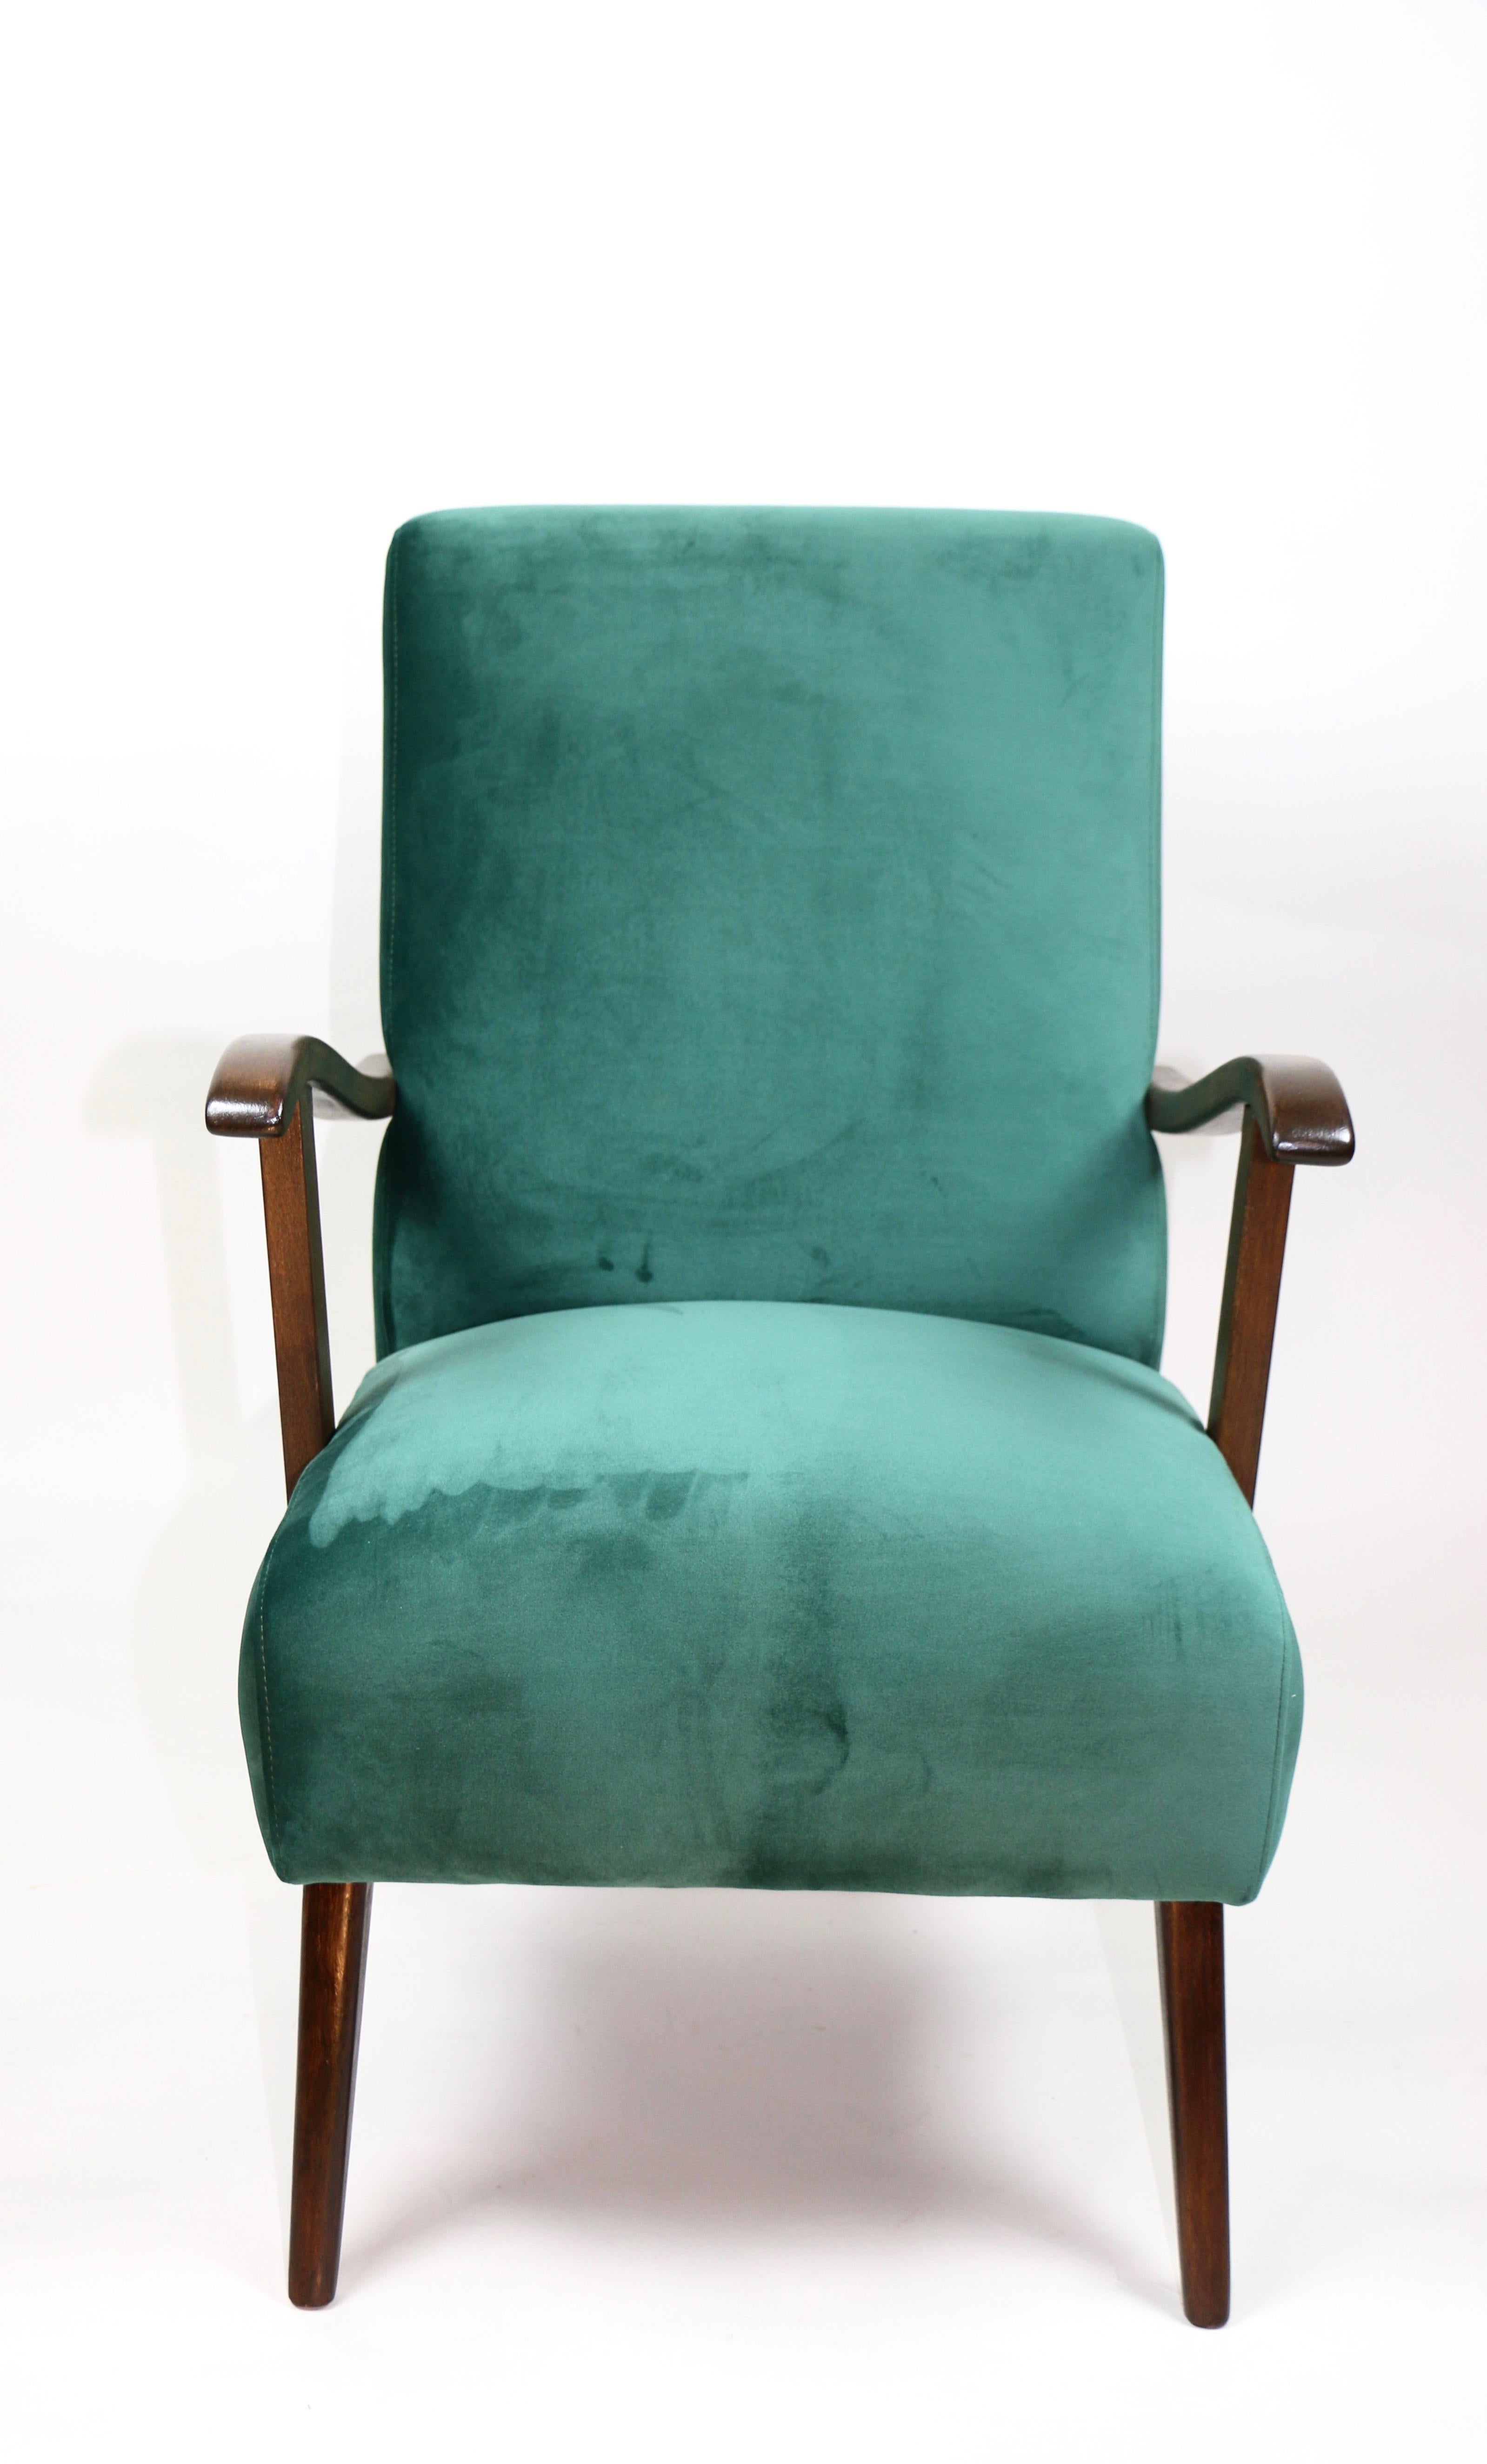 Vintage Armchair in Green Velvet from 1970s For Sale 7